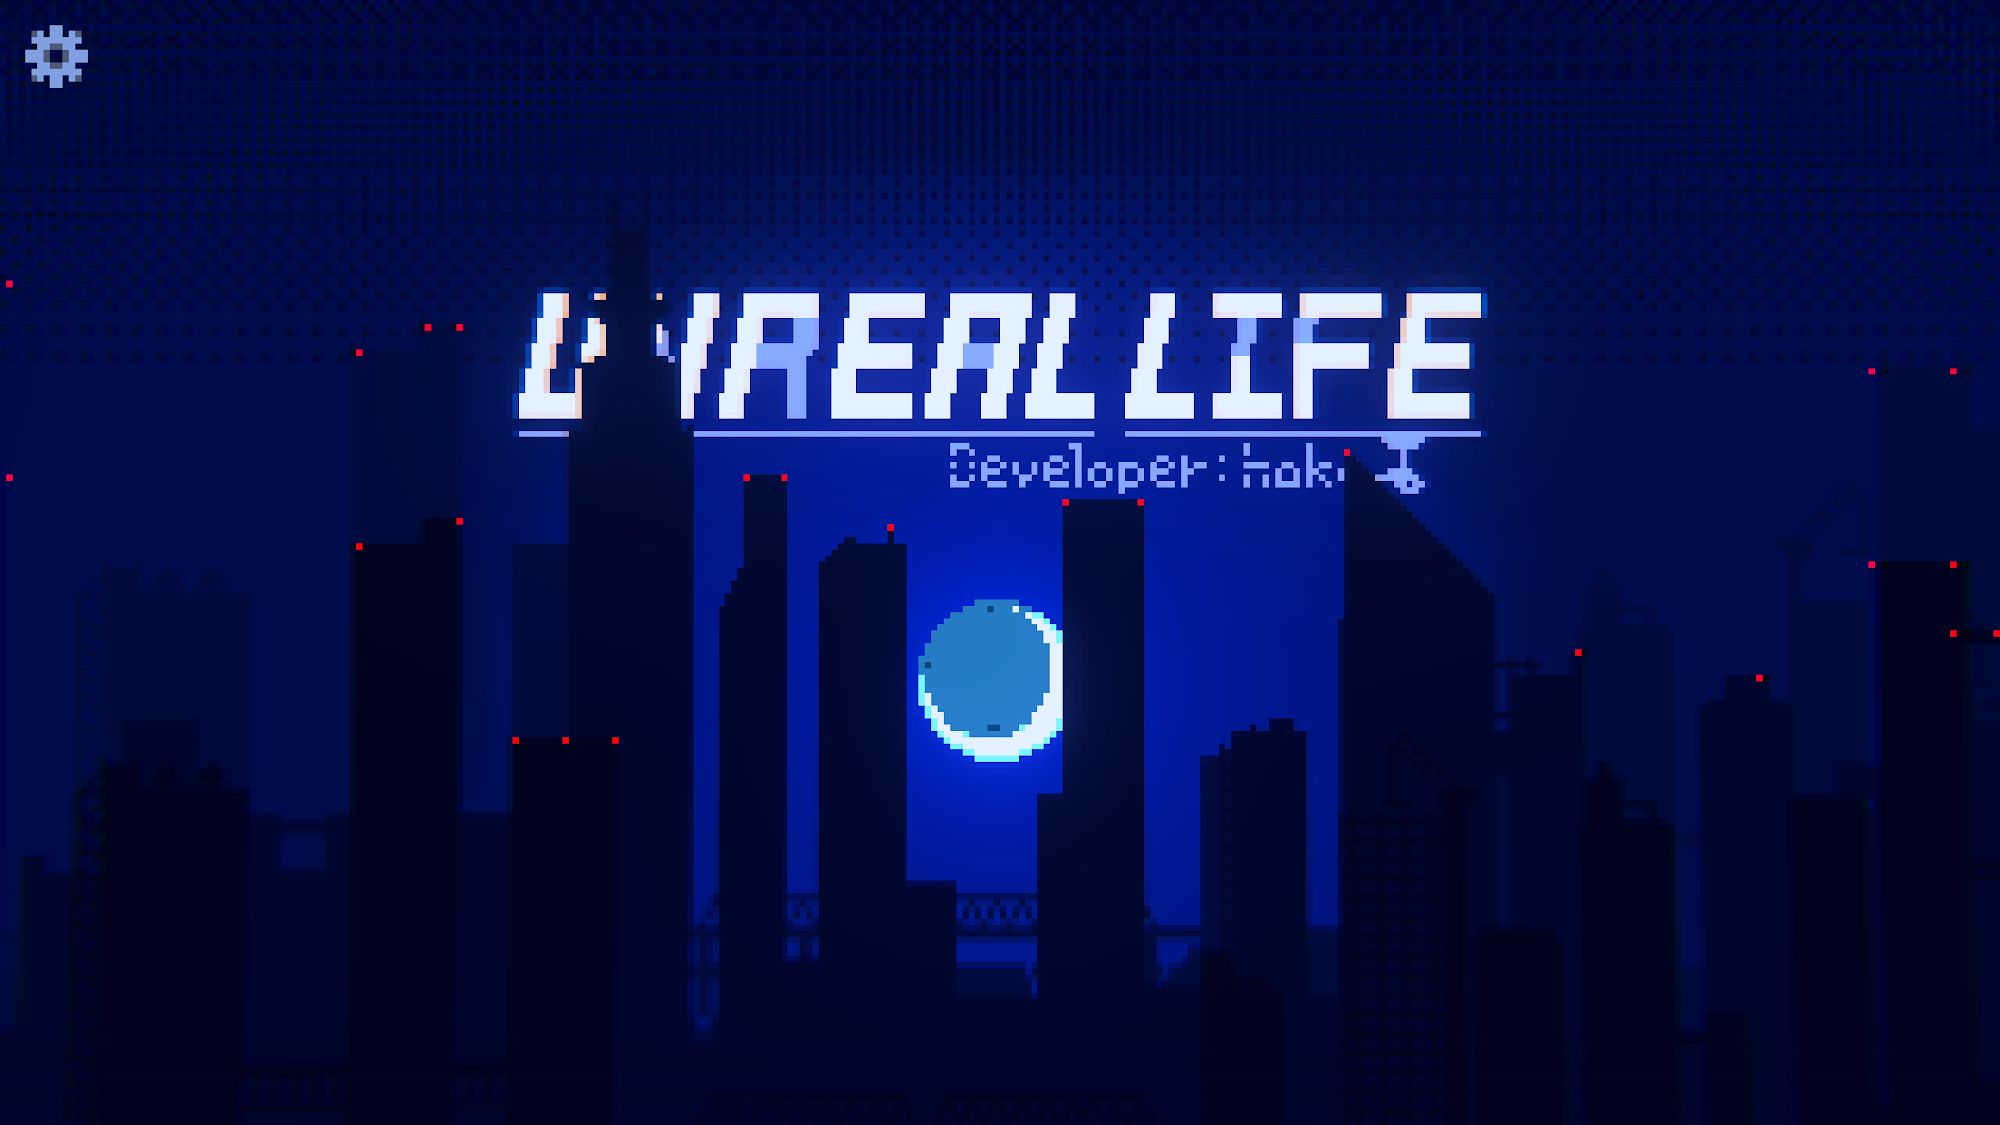 Télécharger Unreal Life pour Android gratuit.